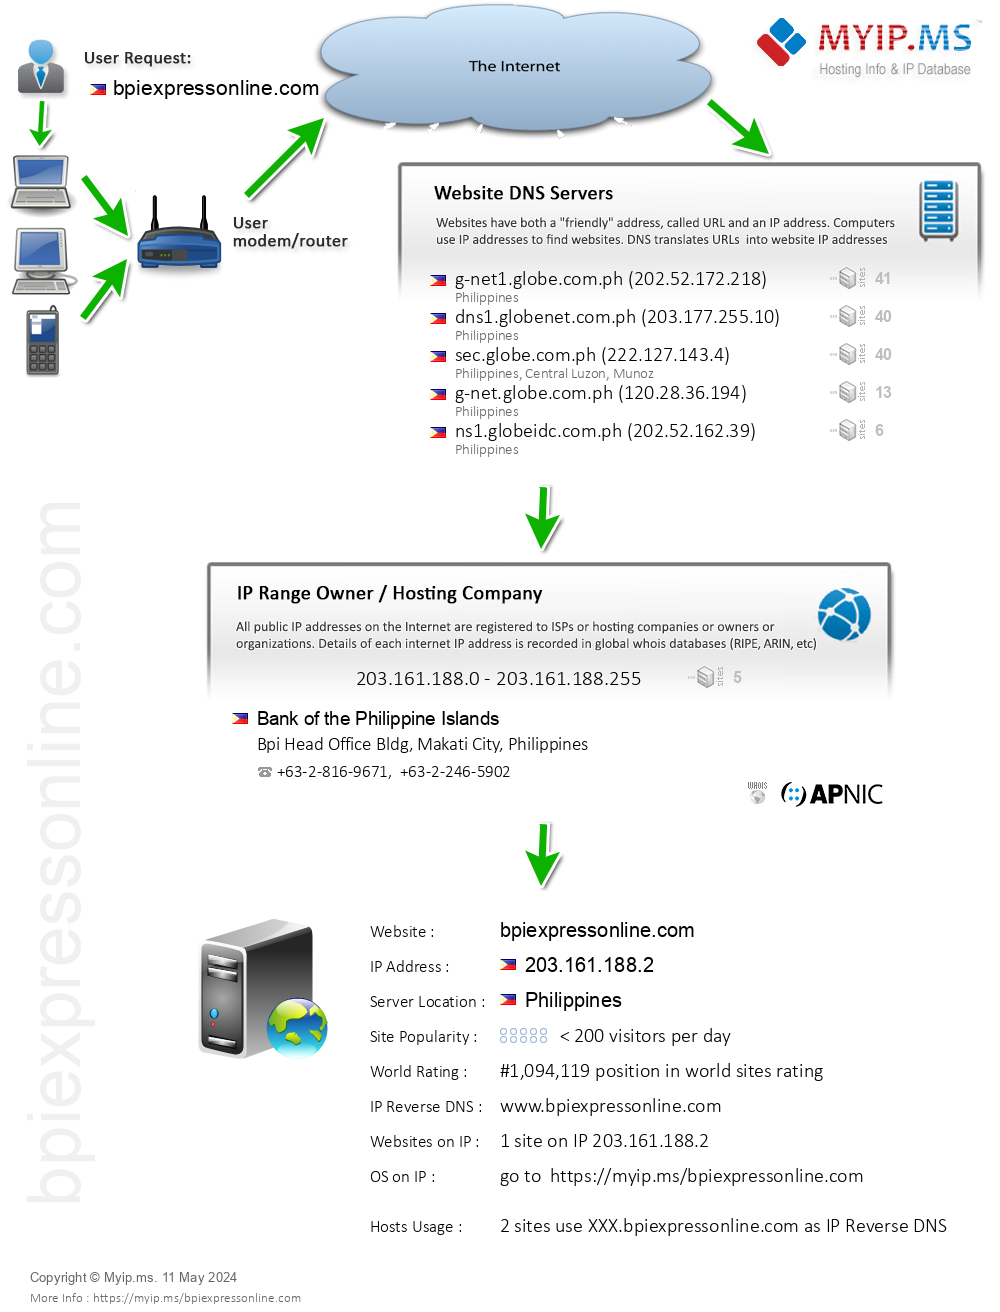 Bpiexpressonline.com - Website Hosting Visual IP Diagram